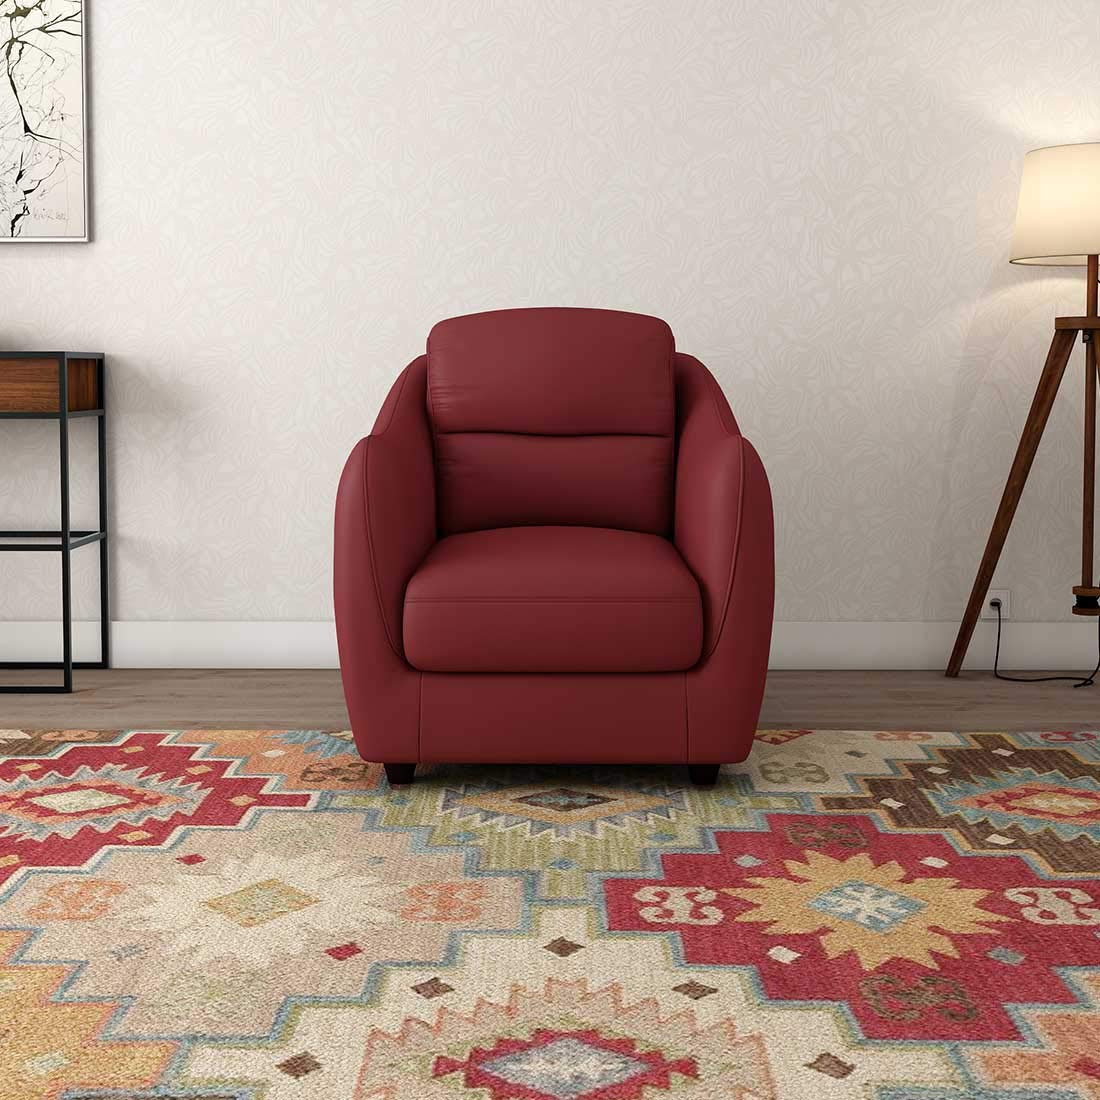 Durian Blaze PVC Single Seater Sofa for Living Room (Burgundy)